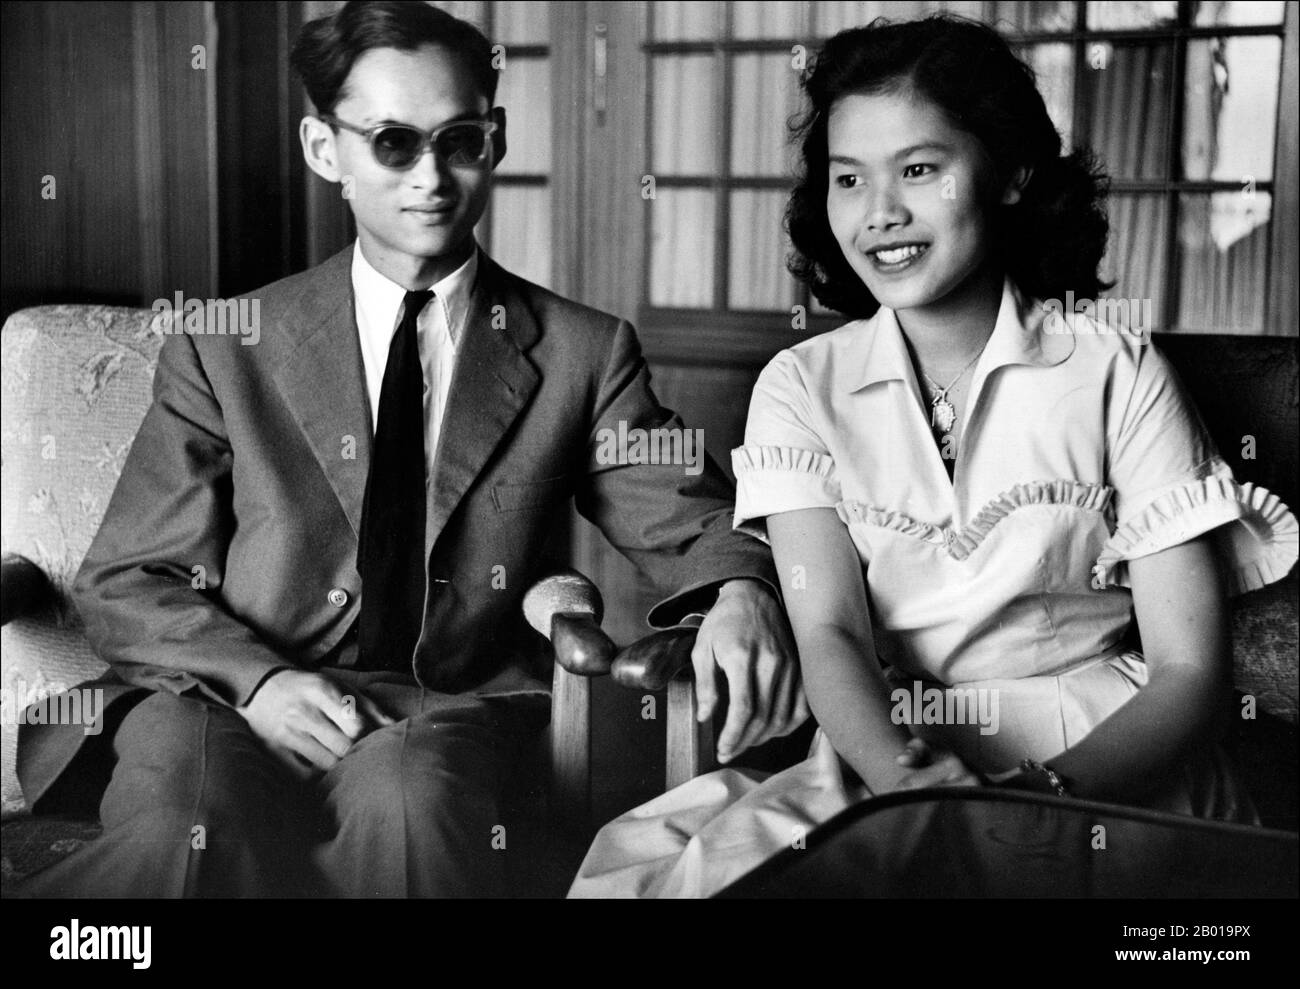 Thaïlande: Roi Bhumibol Adulyadej (5 décembre 1927 - 13 octobre 2016) avec la reine Sirikit, c. 1950. HM Roi Bhumibol Adulyadej (Institut royal: Phumiphon Adunyadet), également connu sous le nom de Rama IX, était le neuvième Roi de Thaïlande de la Maison de Chakri. Il régna de 1946 à 2016, et fut l'un des chefs d'État les plus longtemps au monde et le plus long monarque régnant de l'histoire thaïlandaise, ainsi que le troisième plus long monarque régnant de l'histoire mondiale. Il est photographié ici avec sa femme, la Reine Sirikit, née Mum Rajawongse Sirikit Kitiyakara sur 12 août 1932. Ils ont été mariés le 28 avril 1950. Banque D'Images